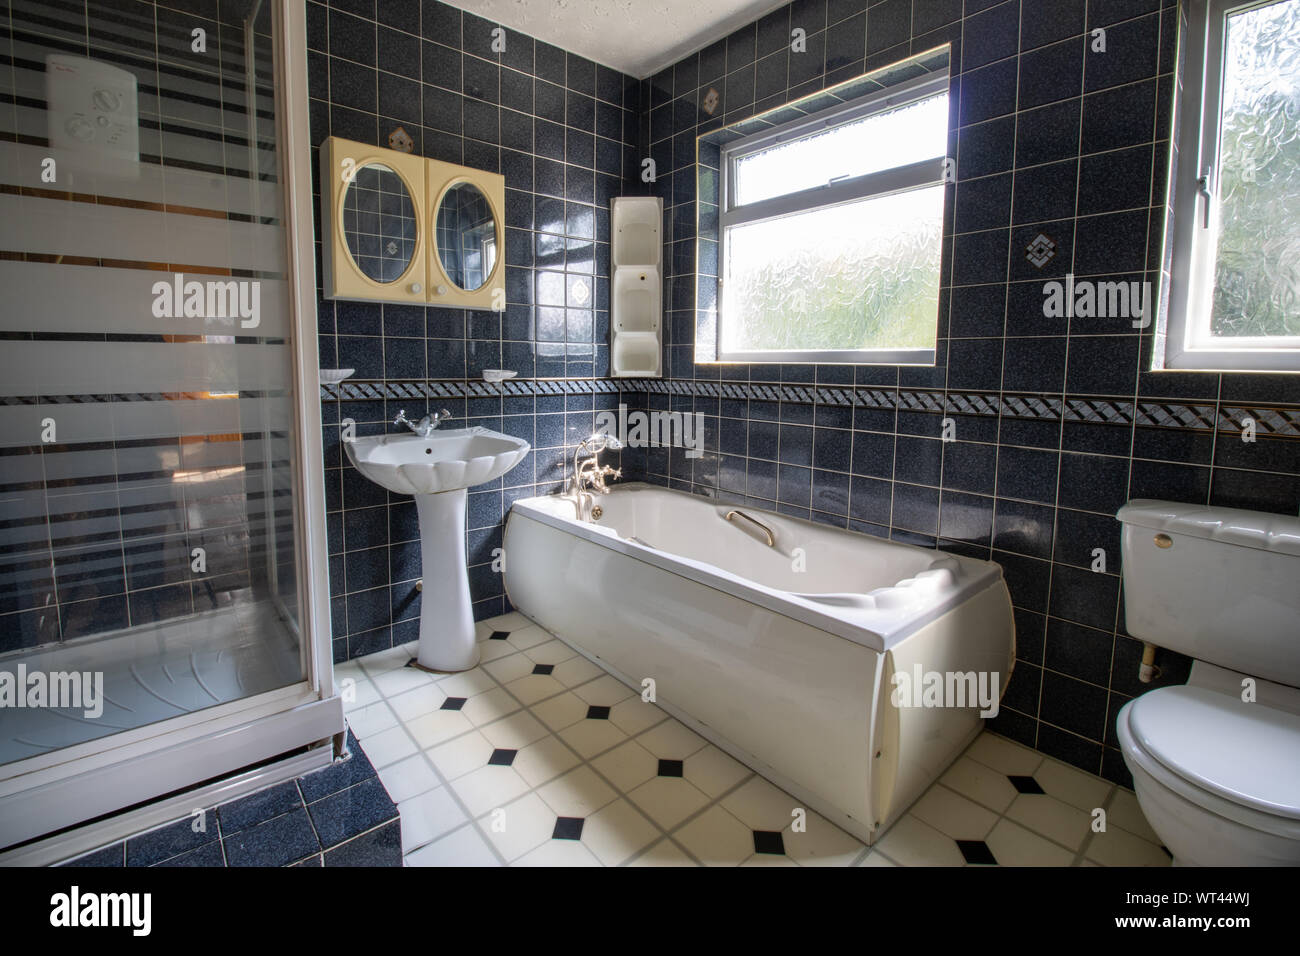 Eine alte 80er Stil Badezimmer, typisch britischen alten Stil Badezimmer  zeigt eine klassische Perle geformte Badewanne, Wc und  Waschbecken/Waschbecken mit schwarzen Fliesen eine Stockfotografie - Alamy